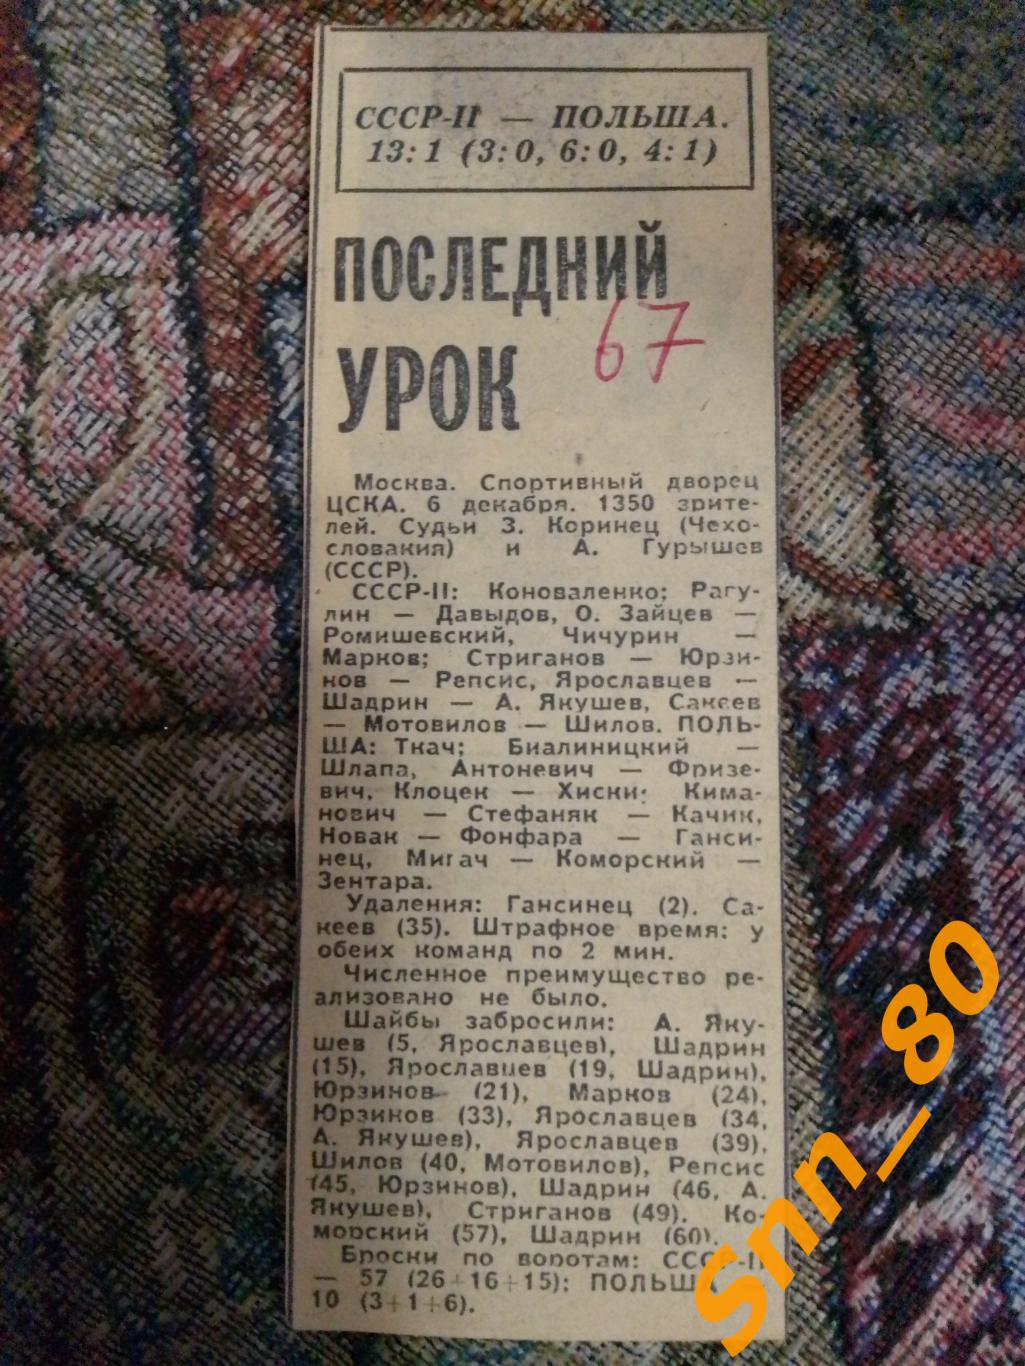 7 Хоккей 1967 СССР-2 - Польша 13-1 Последний урок